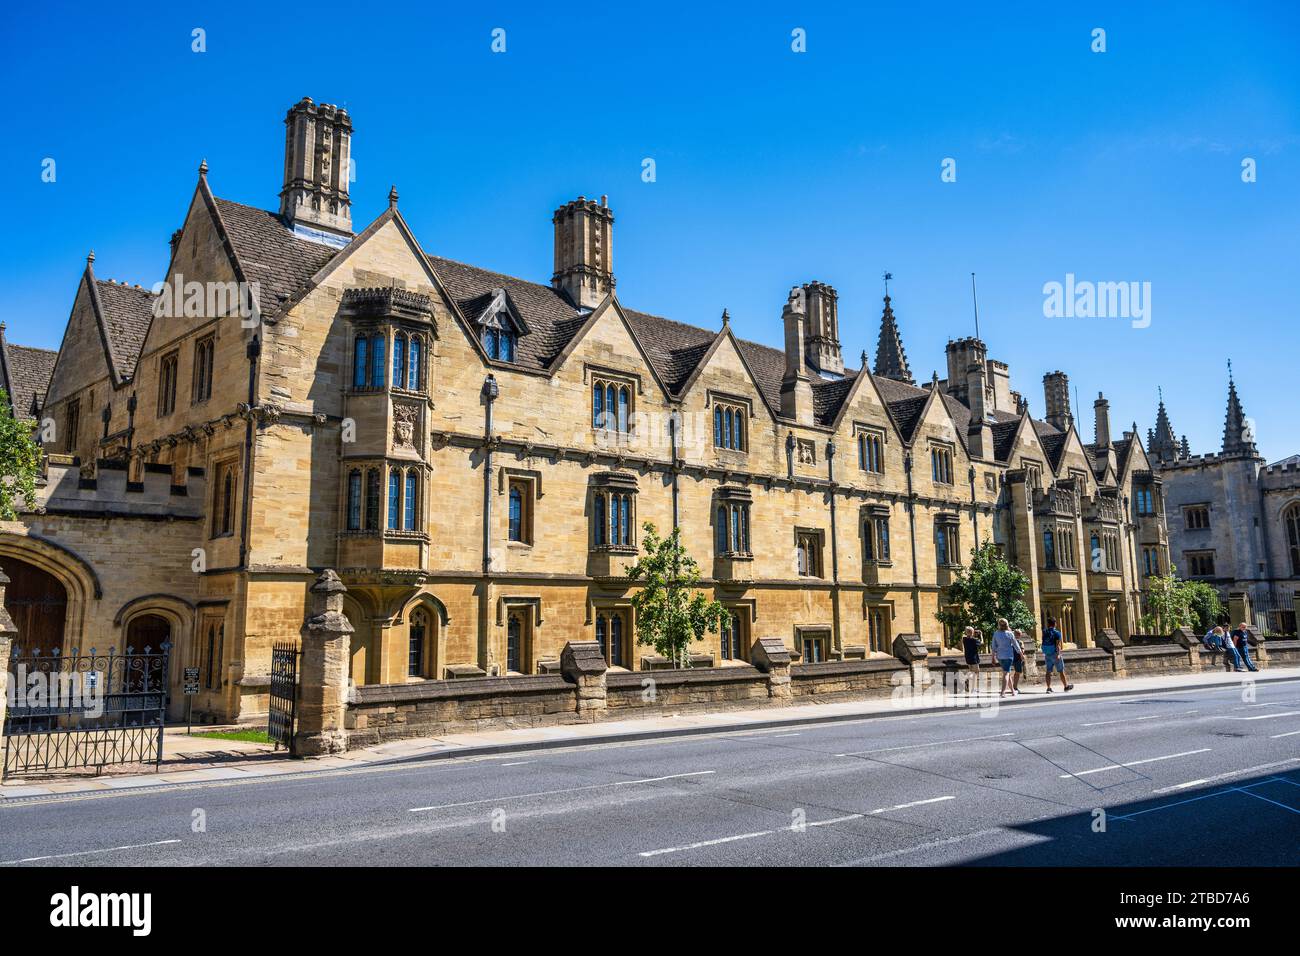 St Swithun's Quad, Magdalen College, University of Oxford, von der High Street im Stadtzentrum von Oxford, Oxfordshire, England, Großbritannien Stockfoto